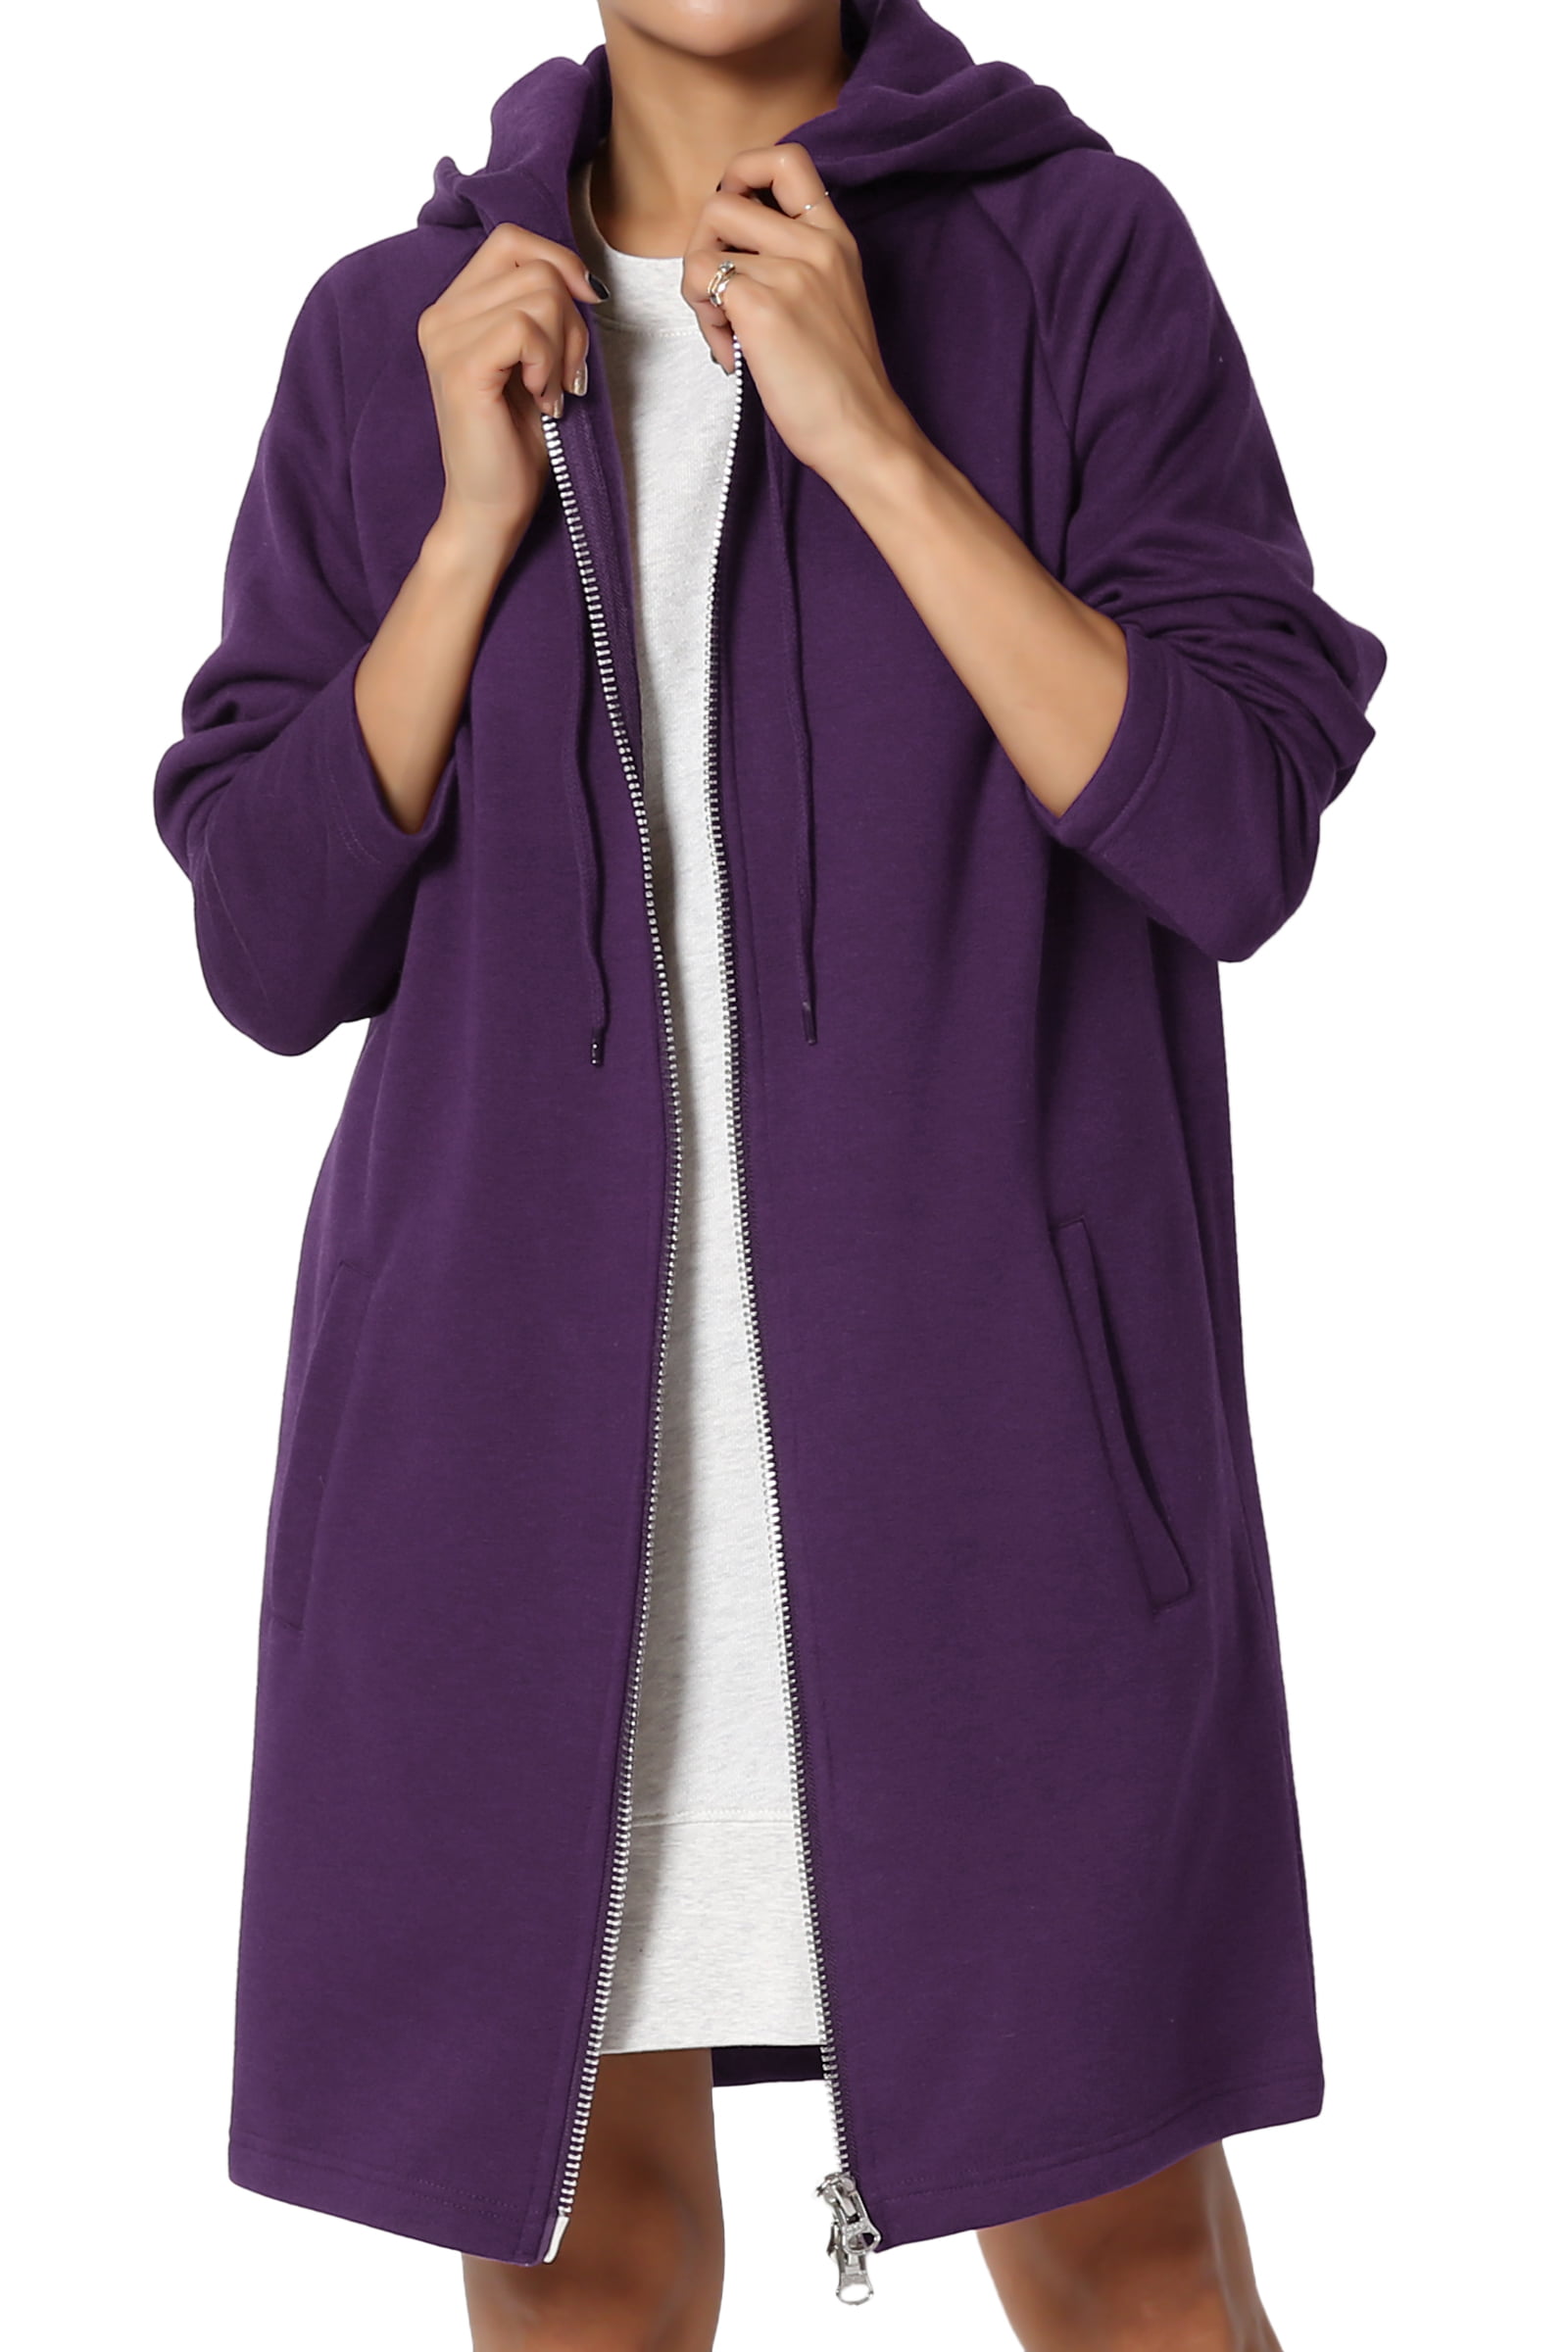 TheMogan Women's S~3X Oversized Hoodie Full Zip Up Long Sleeve Fleece